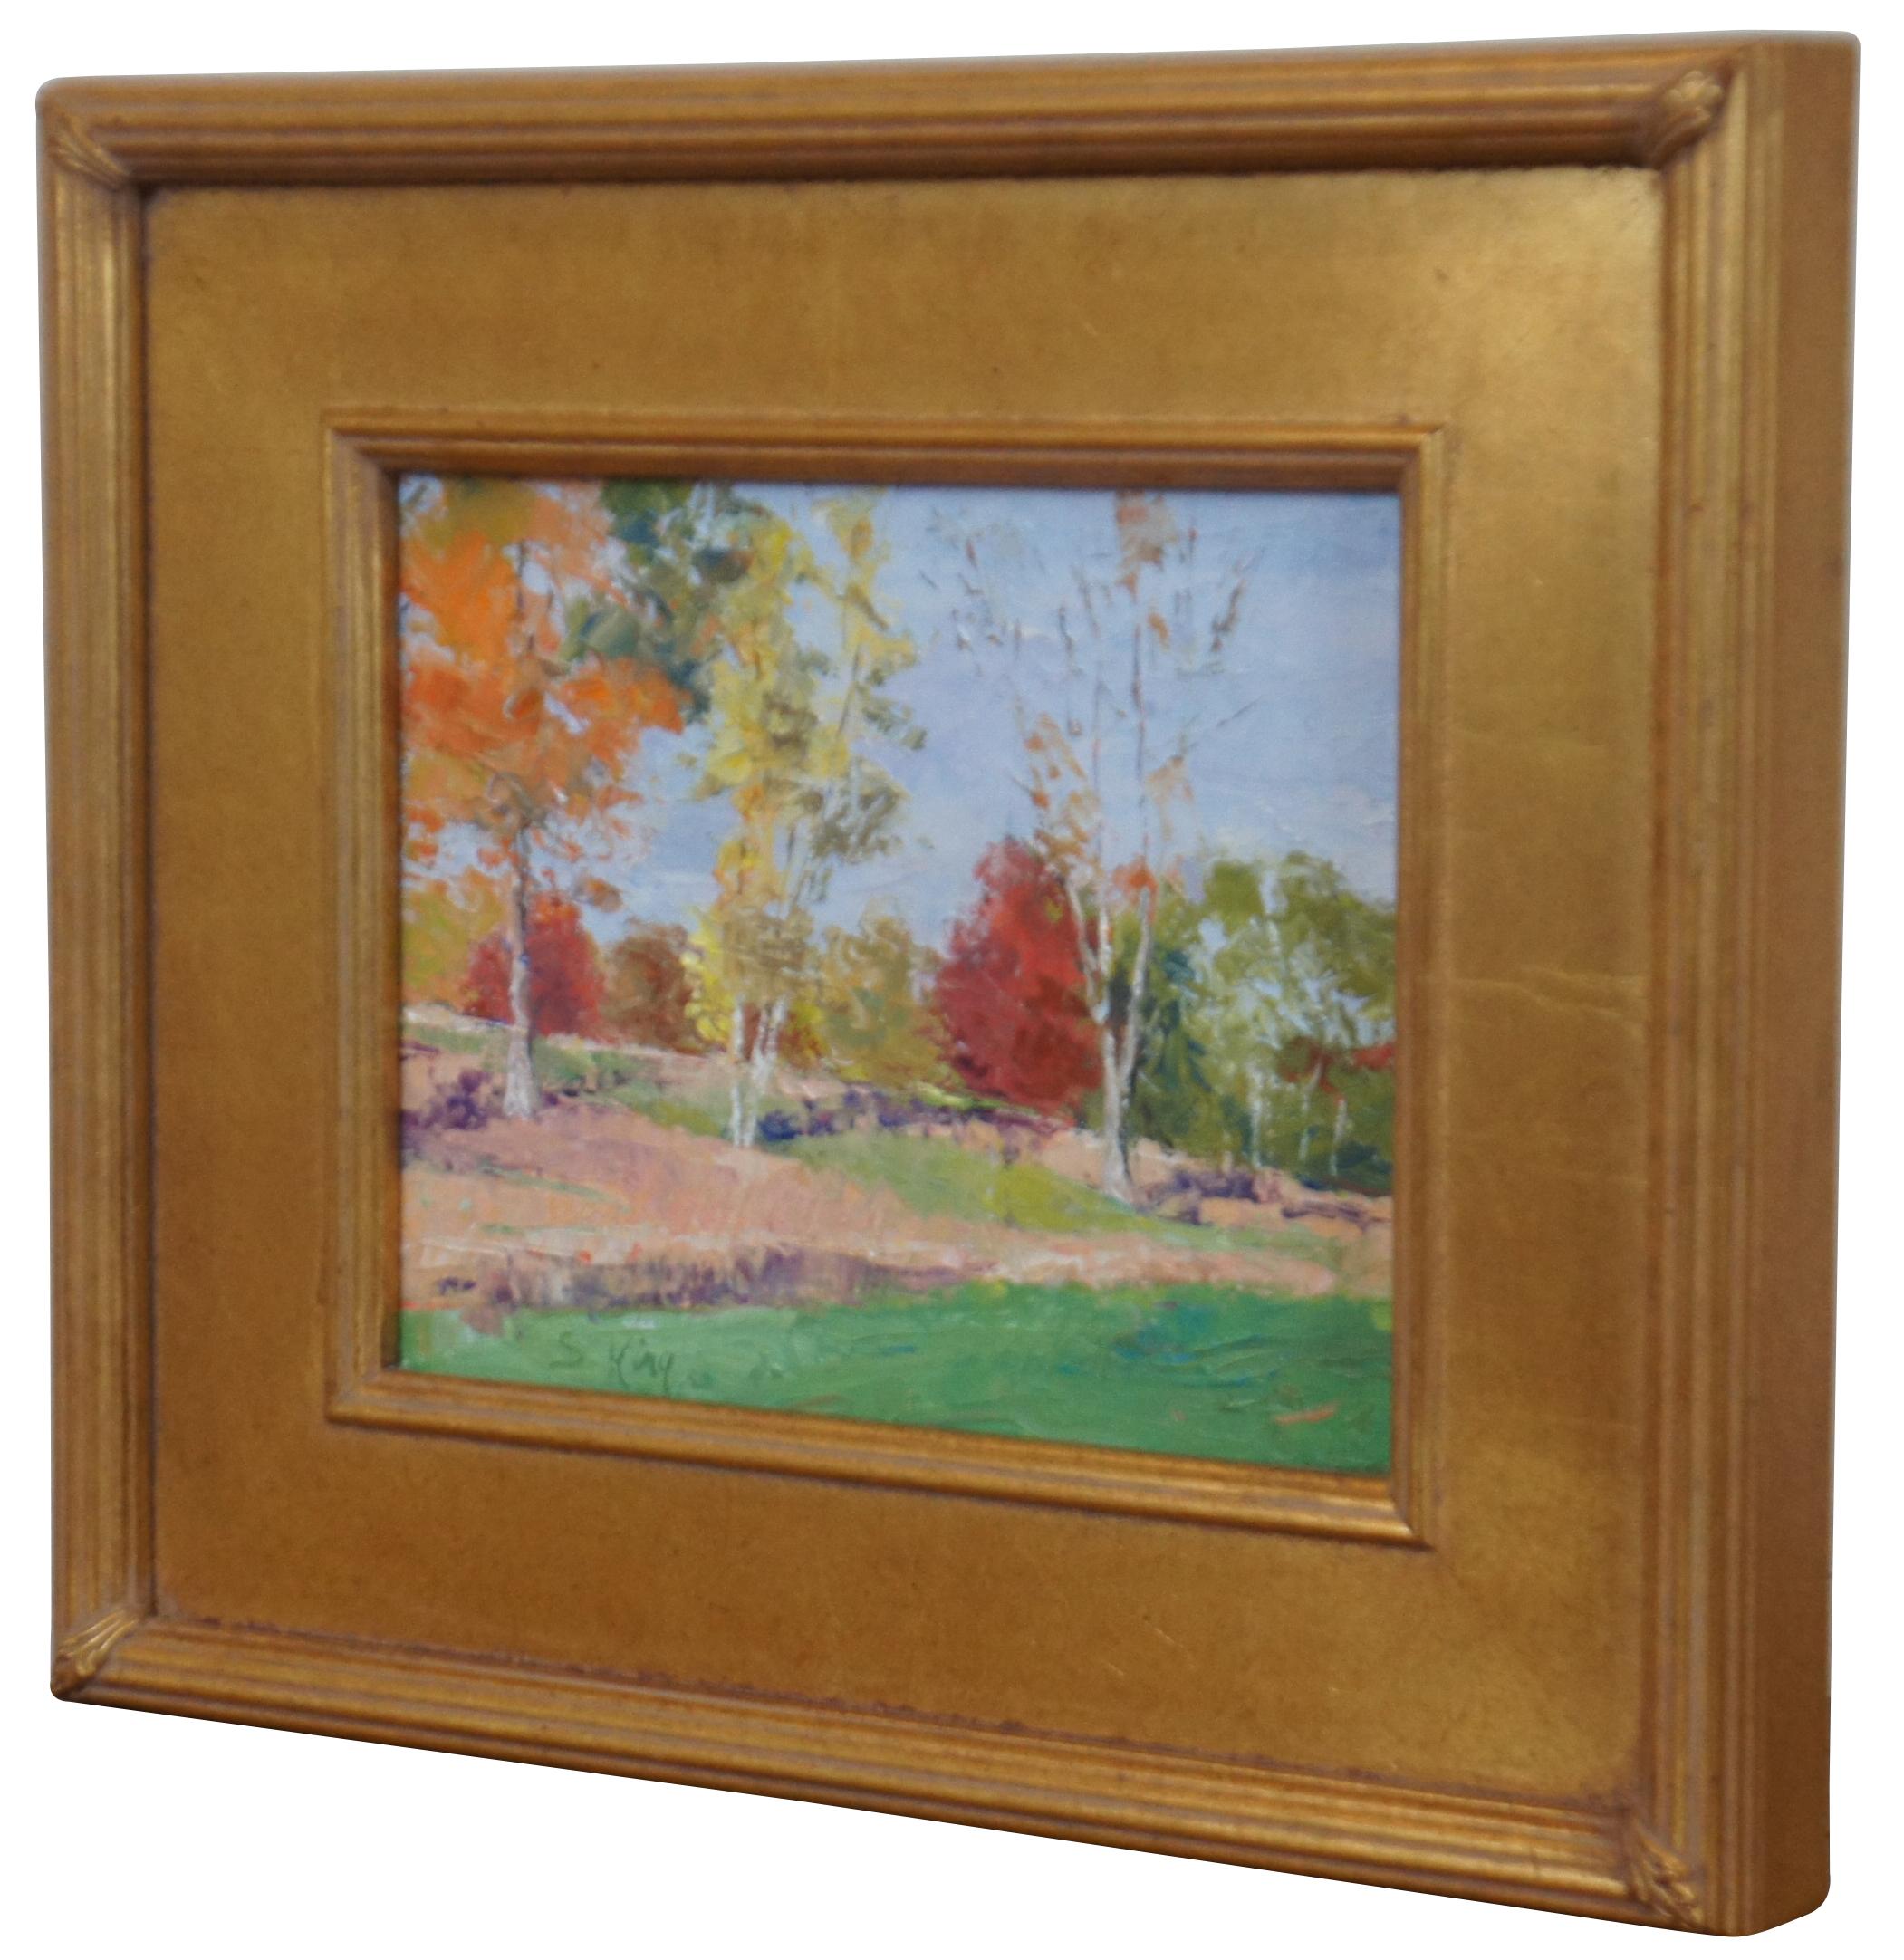 Öl auf Leinwand impressionistisches Gemälde von Dayton, Ohio Künstler Susie King mit einer Herbst- oder Herbstlandschaft mit Bäumen. In Gold gerahmt.

Maße: 15,75